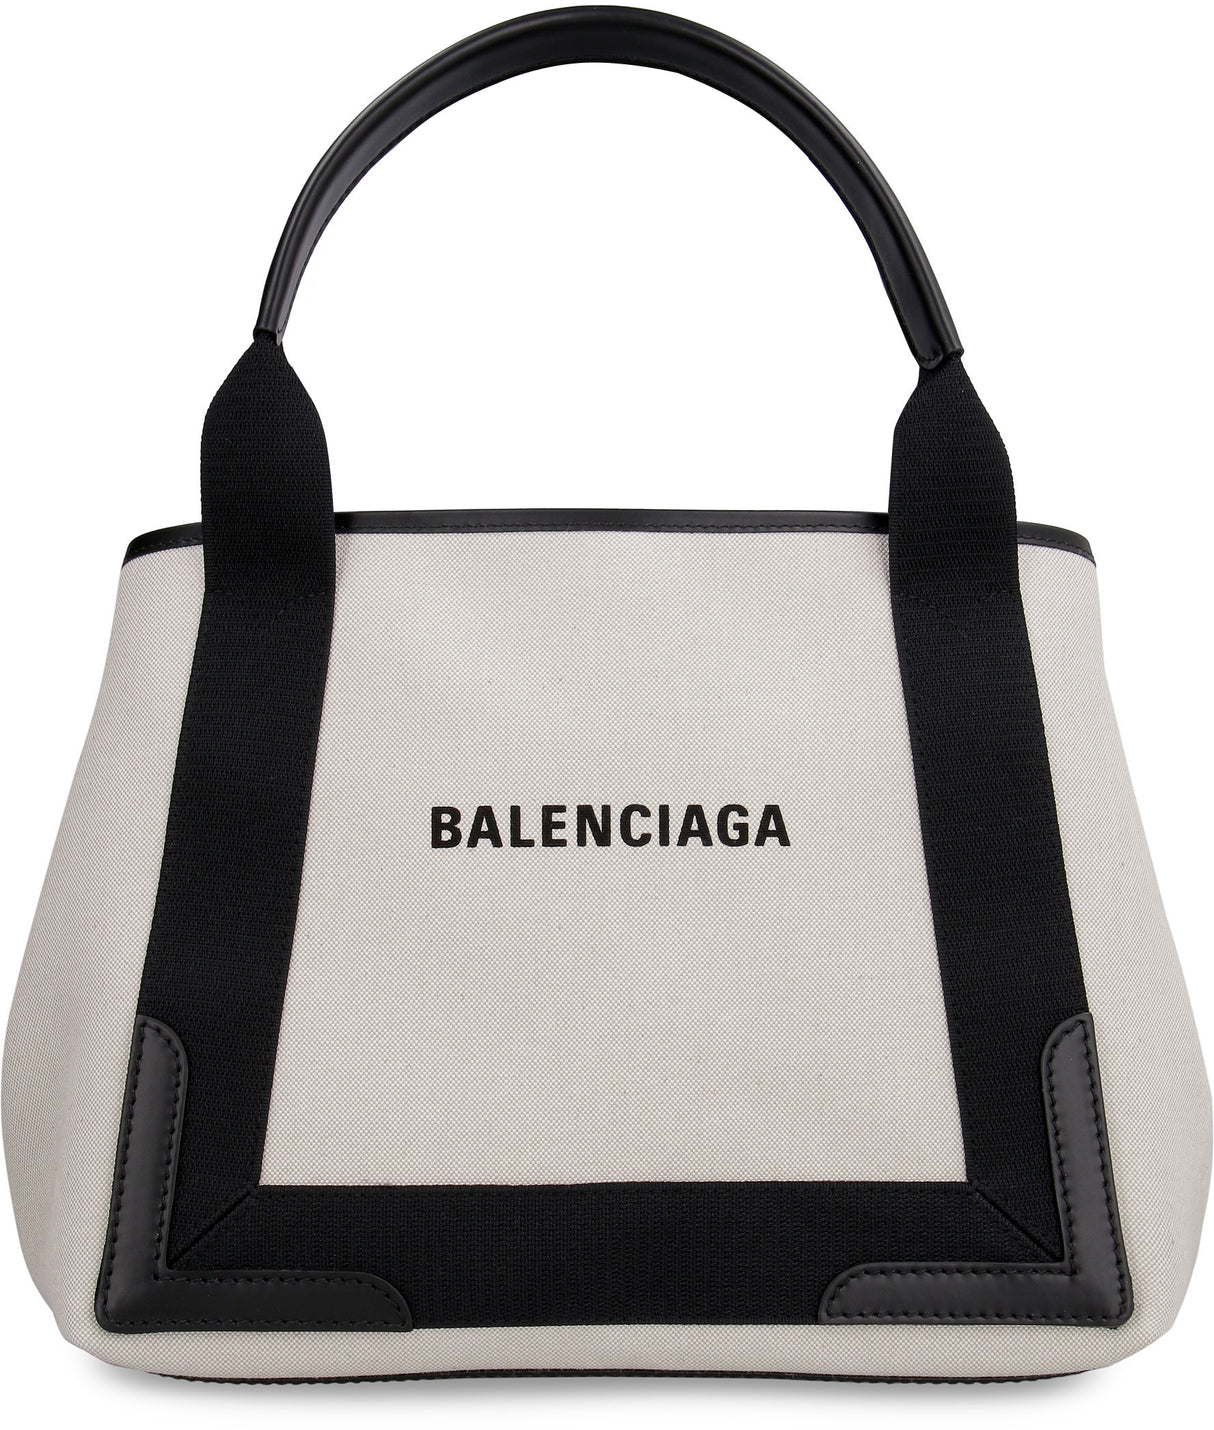 BALENCIAGA Multicolour Top-Handle Tote Bag for Women